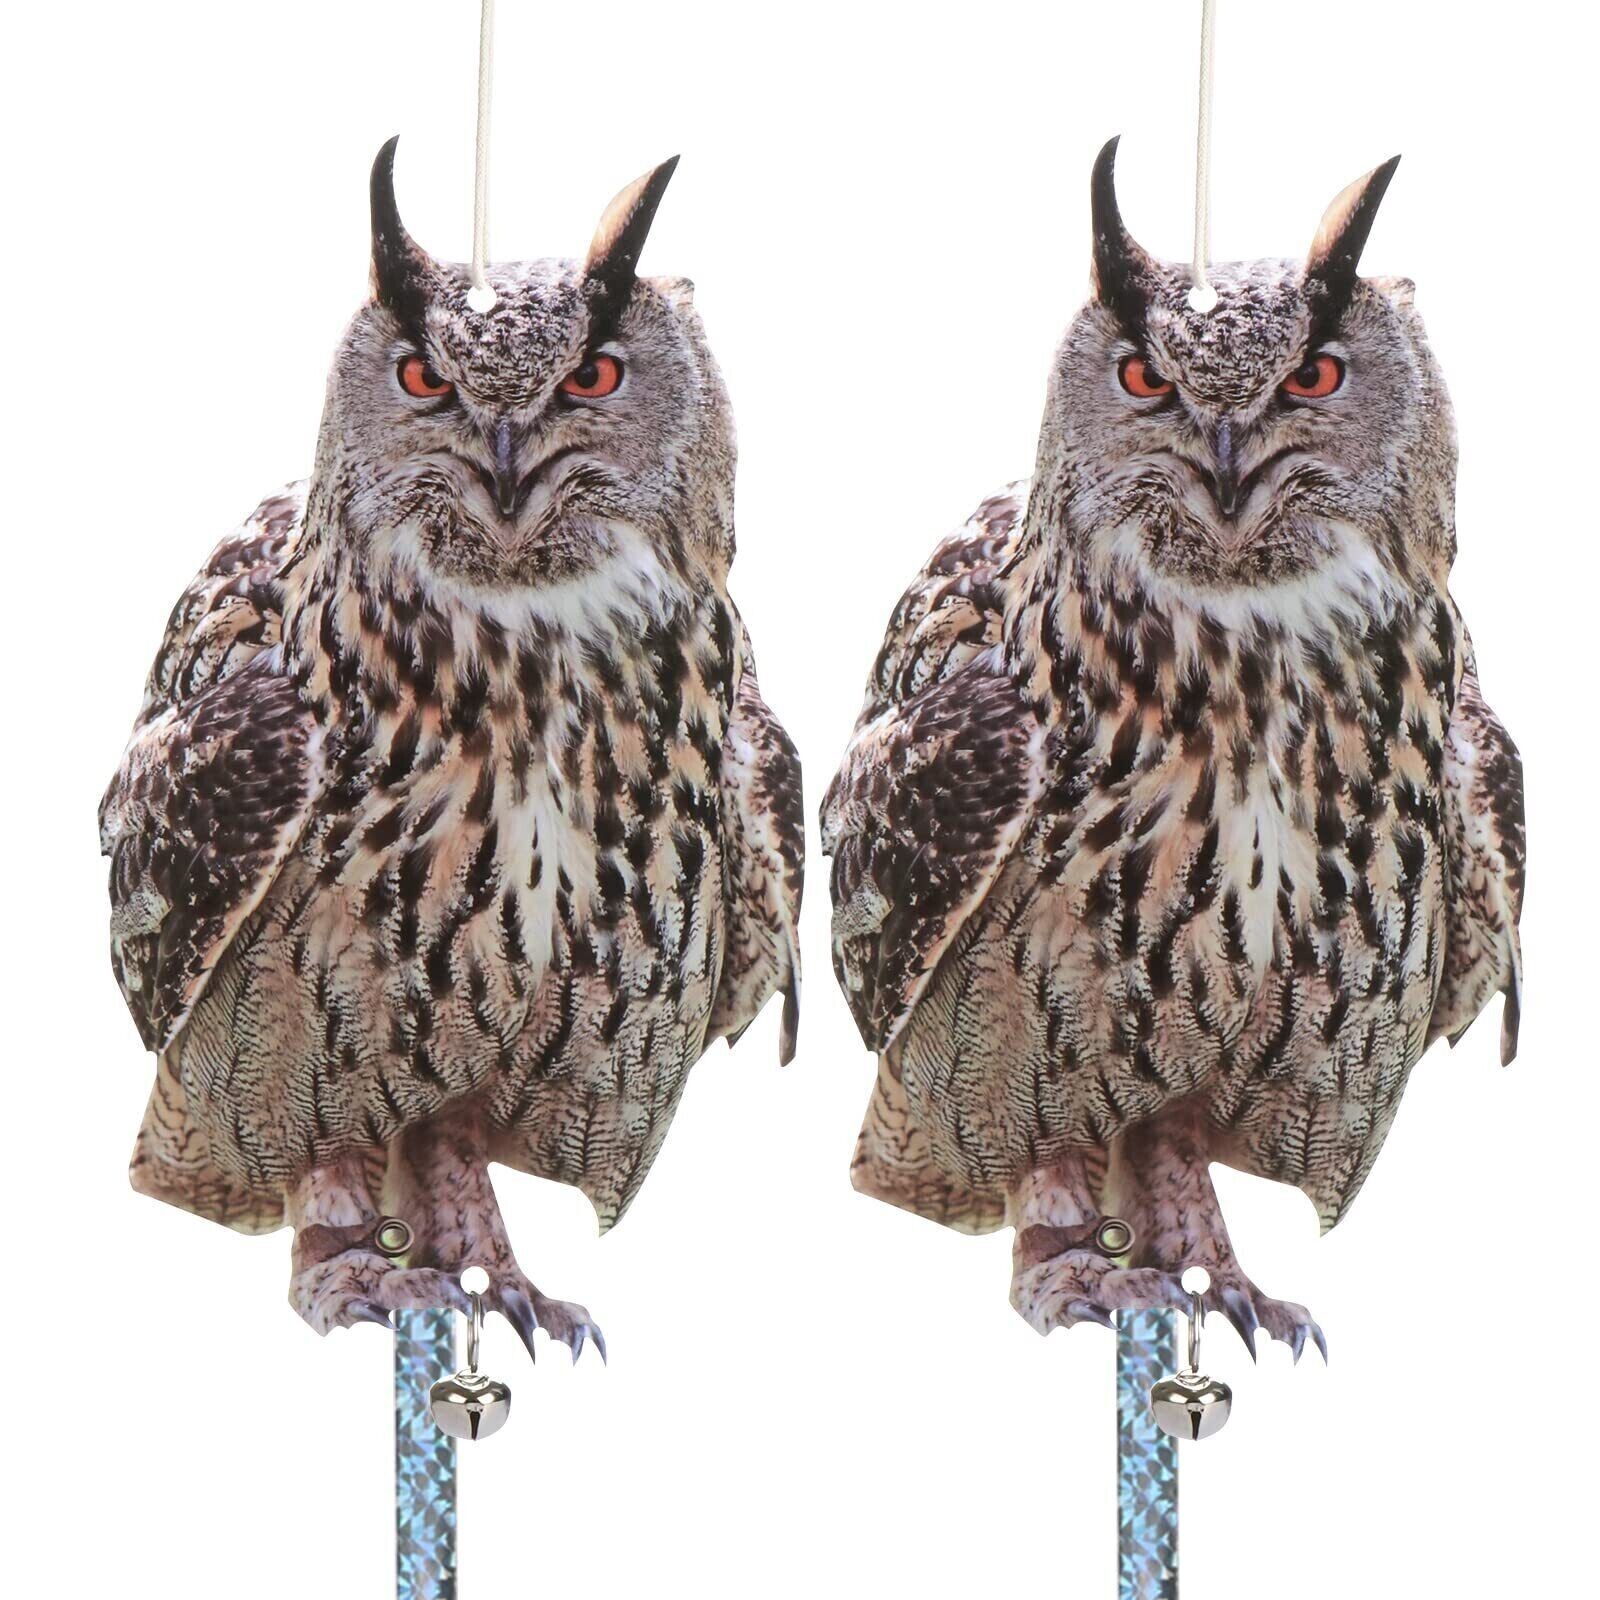 Owl to Keep Birds Away, 2 Pack Bird Scare Plastic Owl Hanging Garden Owls